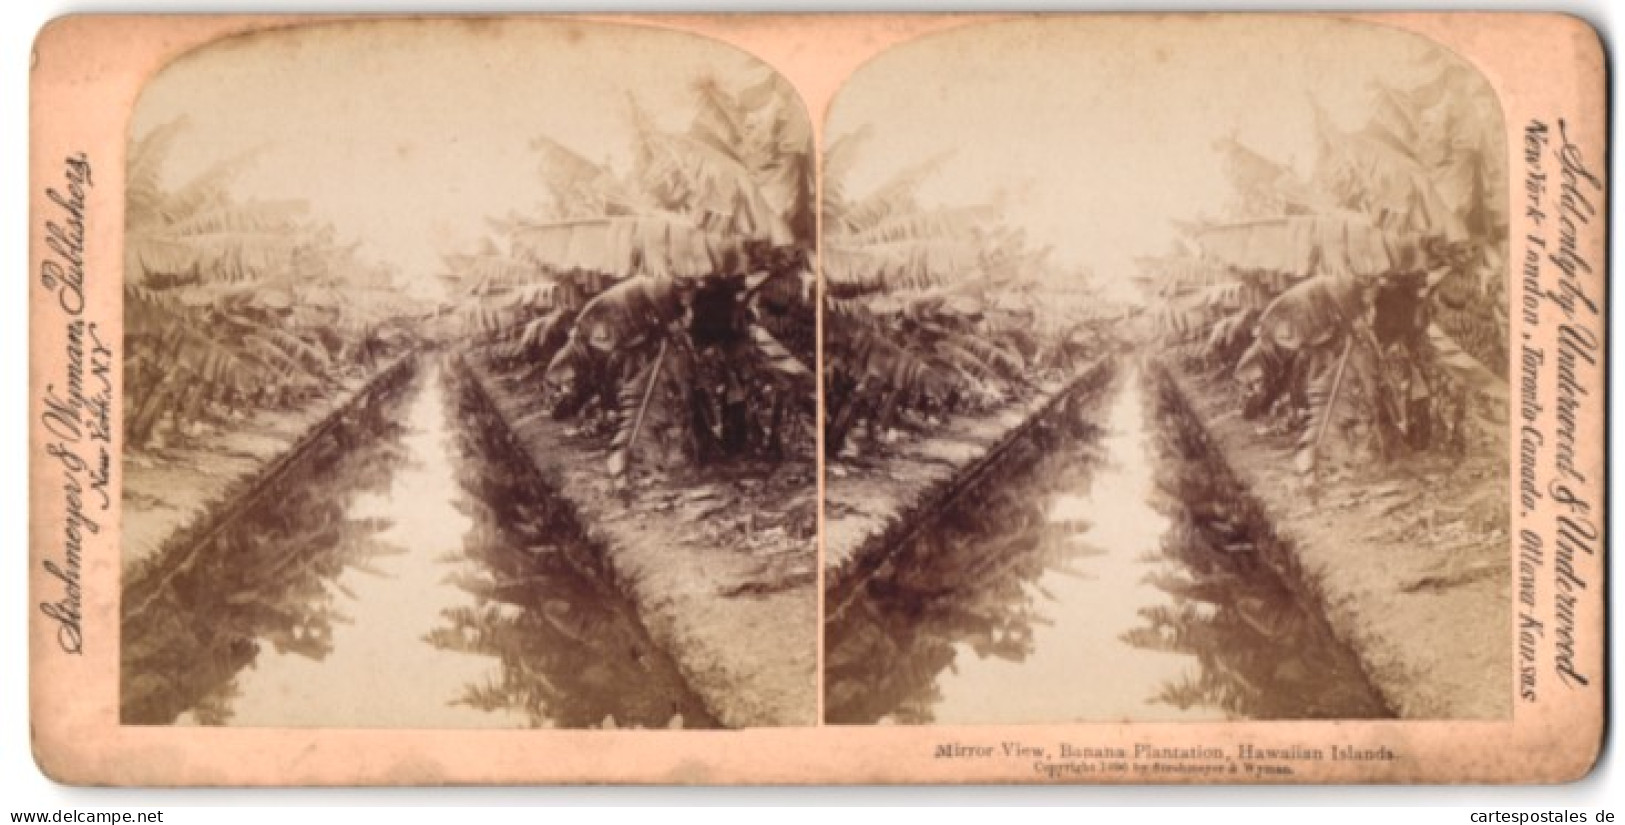 Stereo-Fotografie Strohmeyer & Wyman, New York, Ansicht Hawaii, Mirror View Banana Plantation  - Photos Stéréoscopiques